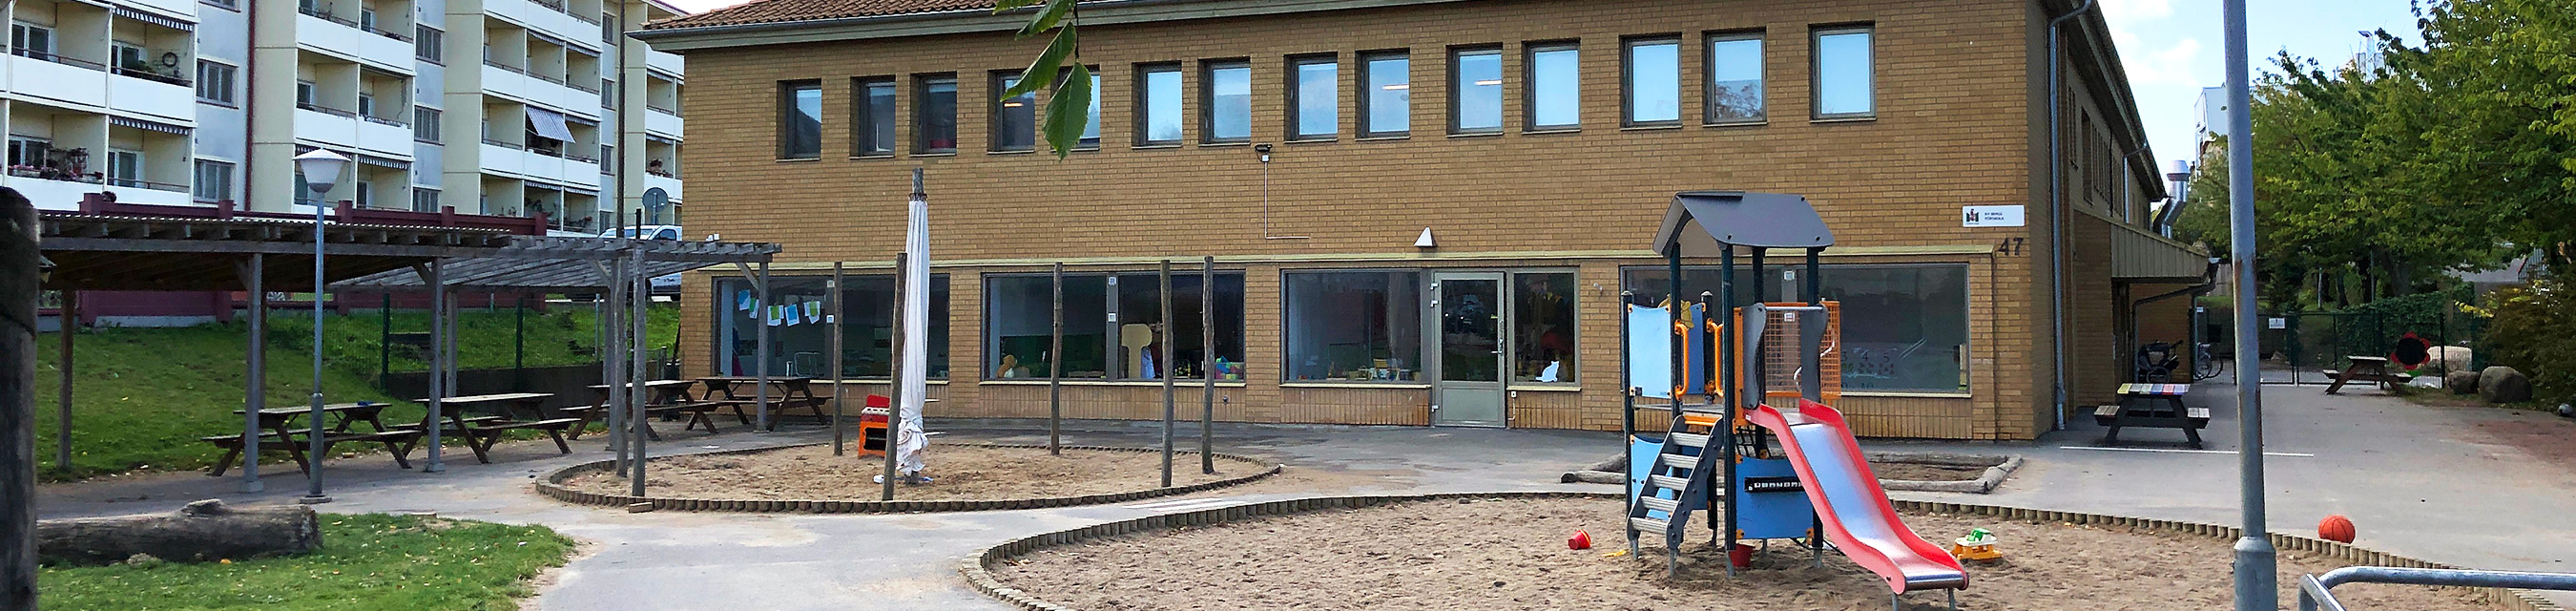 R F Bergs förskola är byggd i två plan och har fem avdelningar.